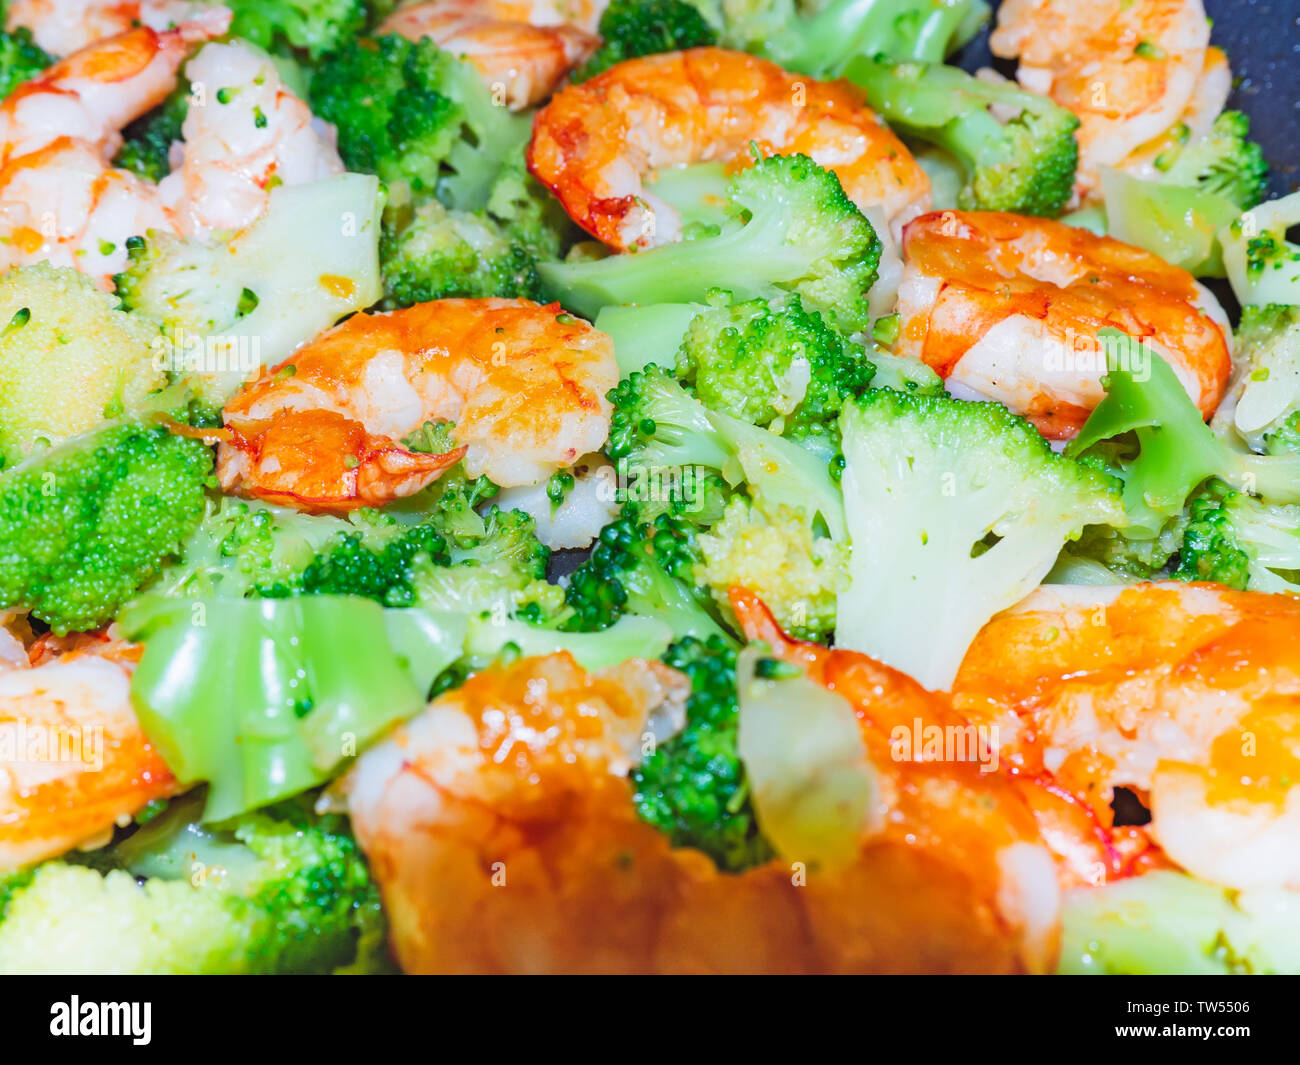 Nahaufnahme des thailändischen, chinesischen traditionellen gesundes Essen rühren - gebratener Broccoli mit Krabben oder Garnelen. Stockfoto